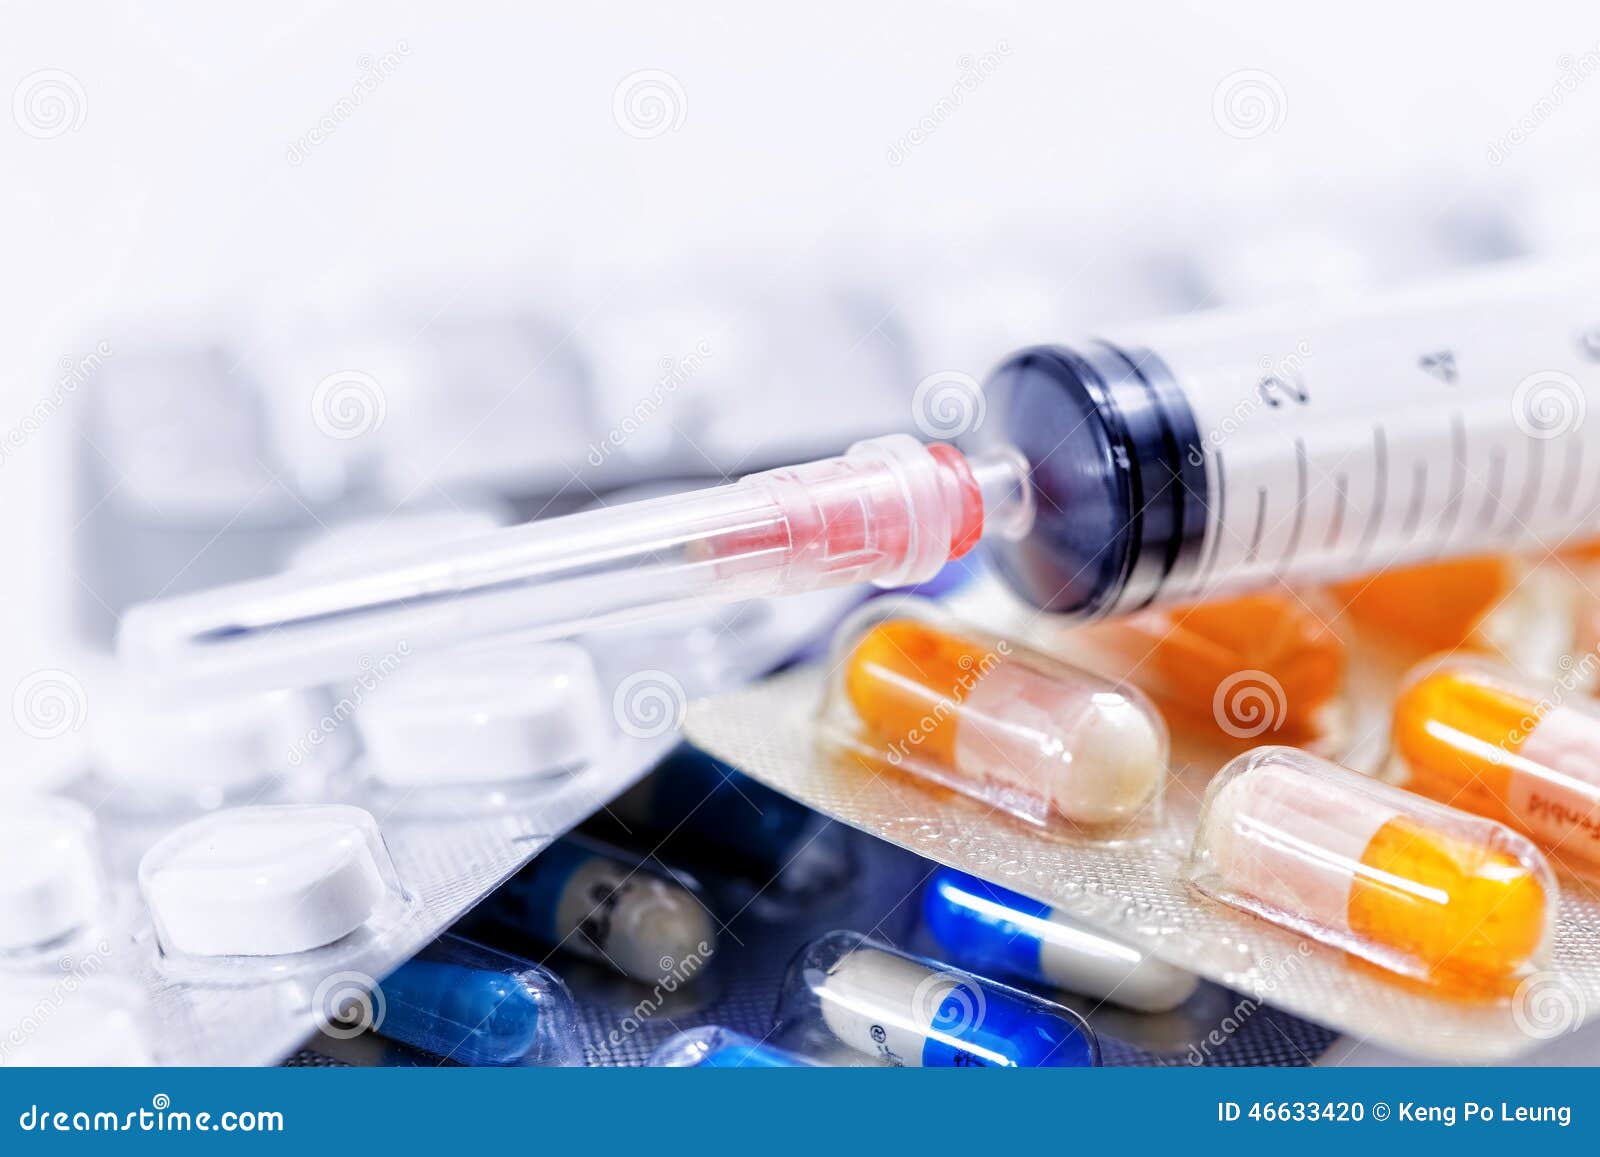 Medizinischer Hintergrund. Spritze mit Glasphiolen und Medikationspillen mischen Drogen bei